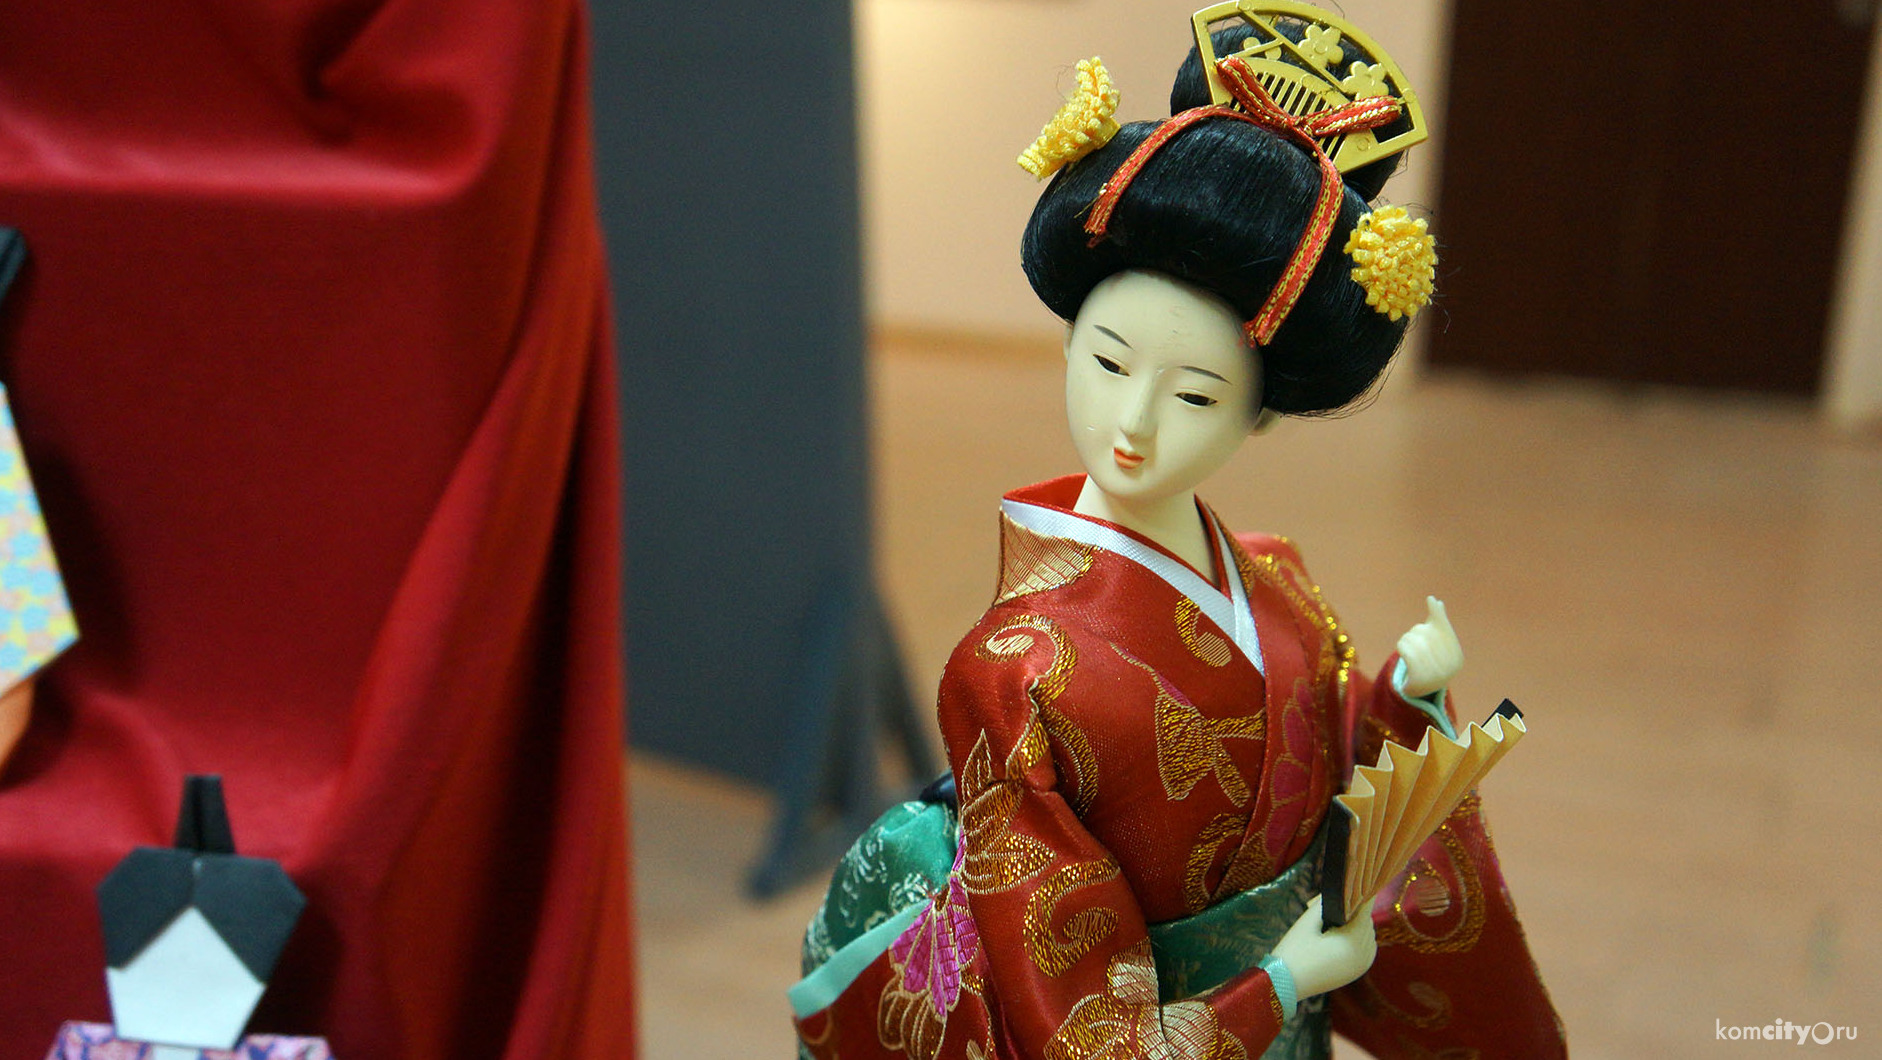 Интересные факты о культуре Японии узнали комсомольчане в рамках «Музейного четверга»